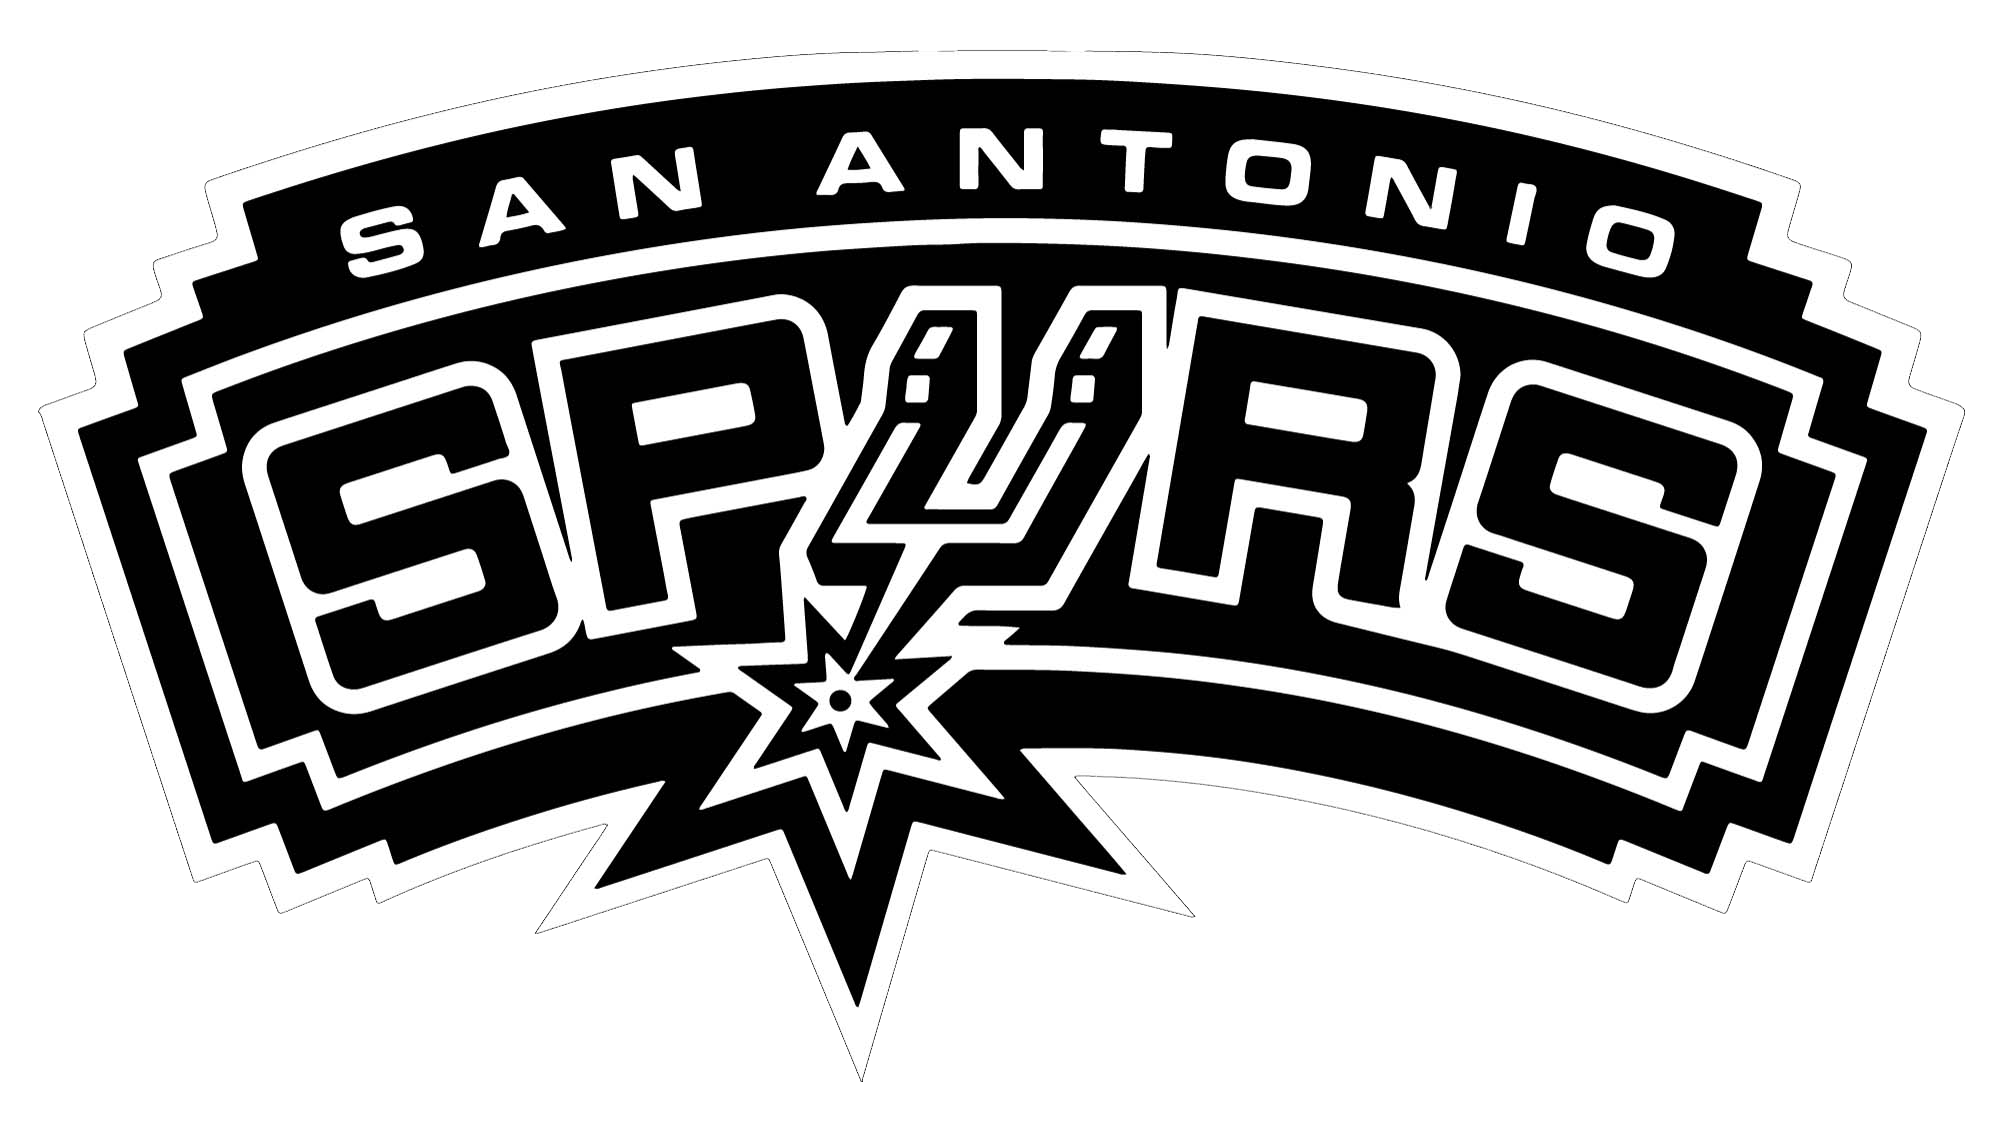 San Antonio Spurs Png Clipart - San Antonio Spurs, Transparent background PNG HD thumbnail